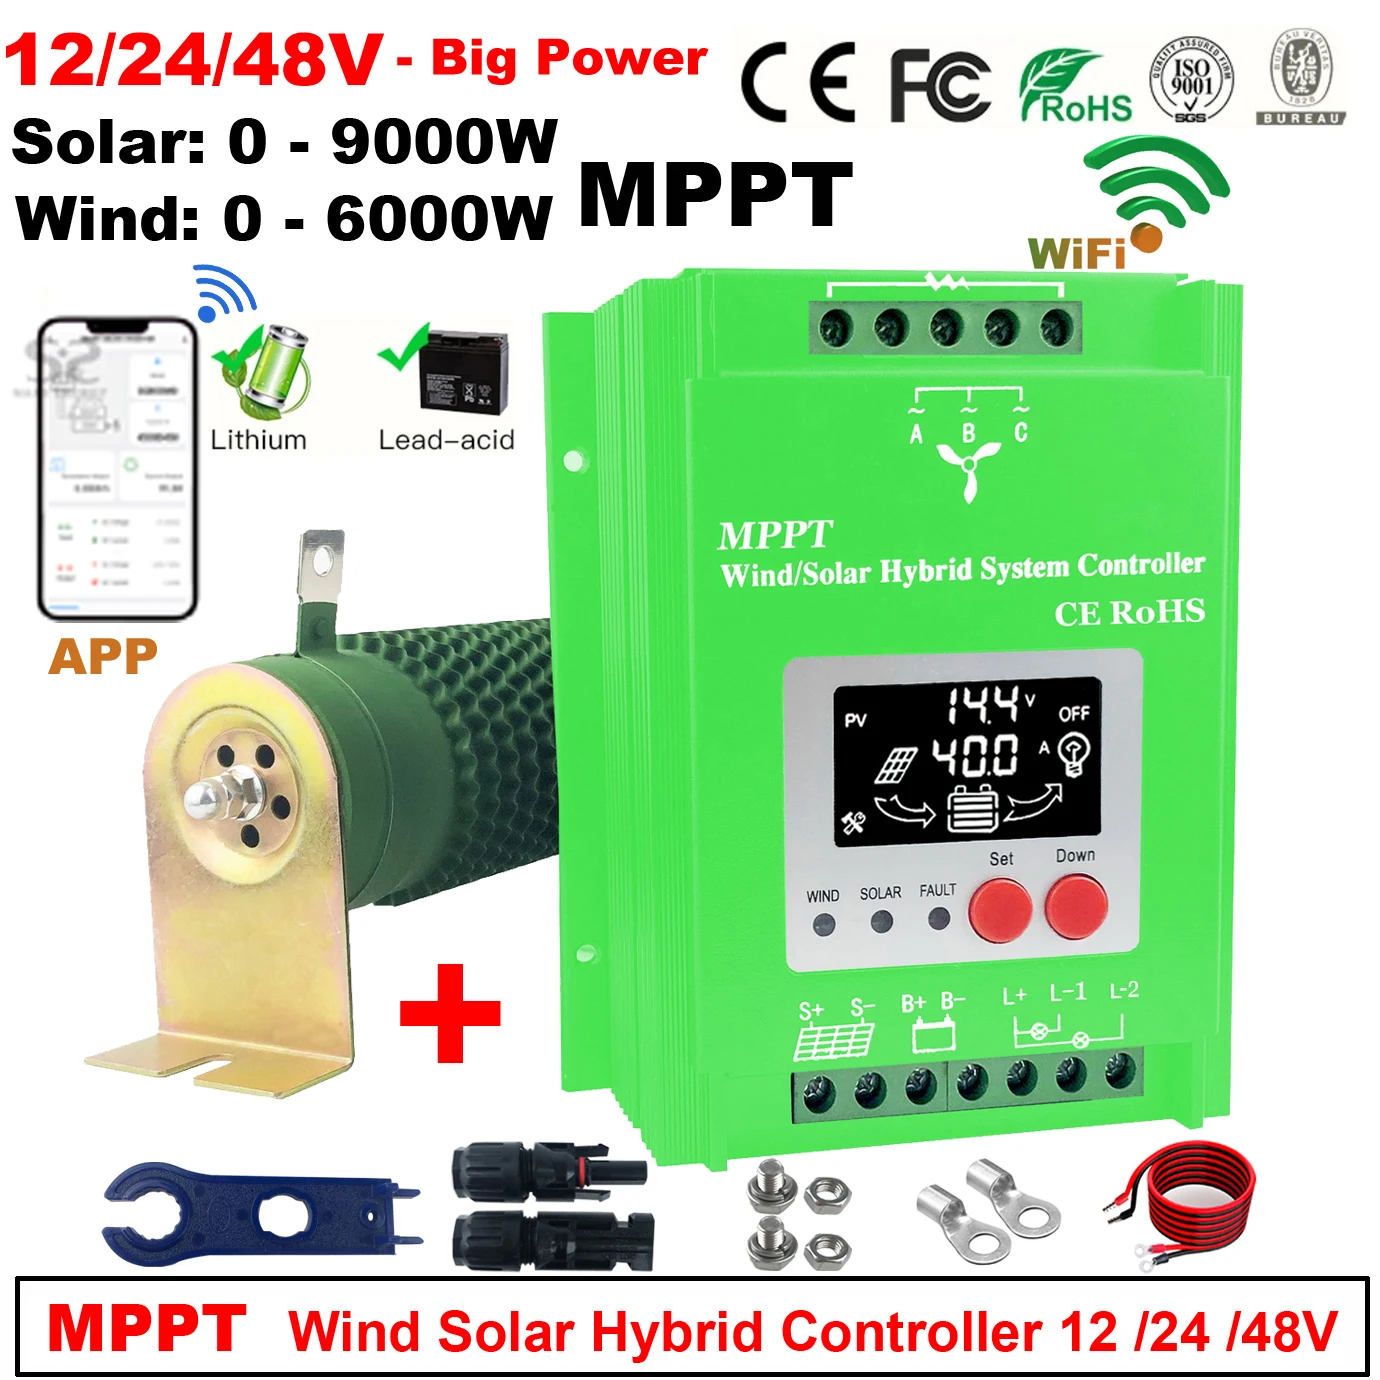 

Гибридный ветровой Солнечный контроллер заряда, 12 В, 24 В, 48 В, 9 кВт, 6000 Вт, MPPT ветрогенератор, солнечная система для литий-свинцово-кислотных батарей Lifepo4